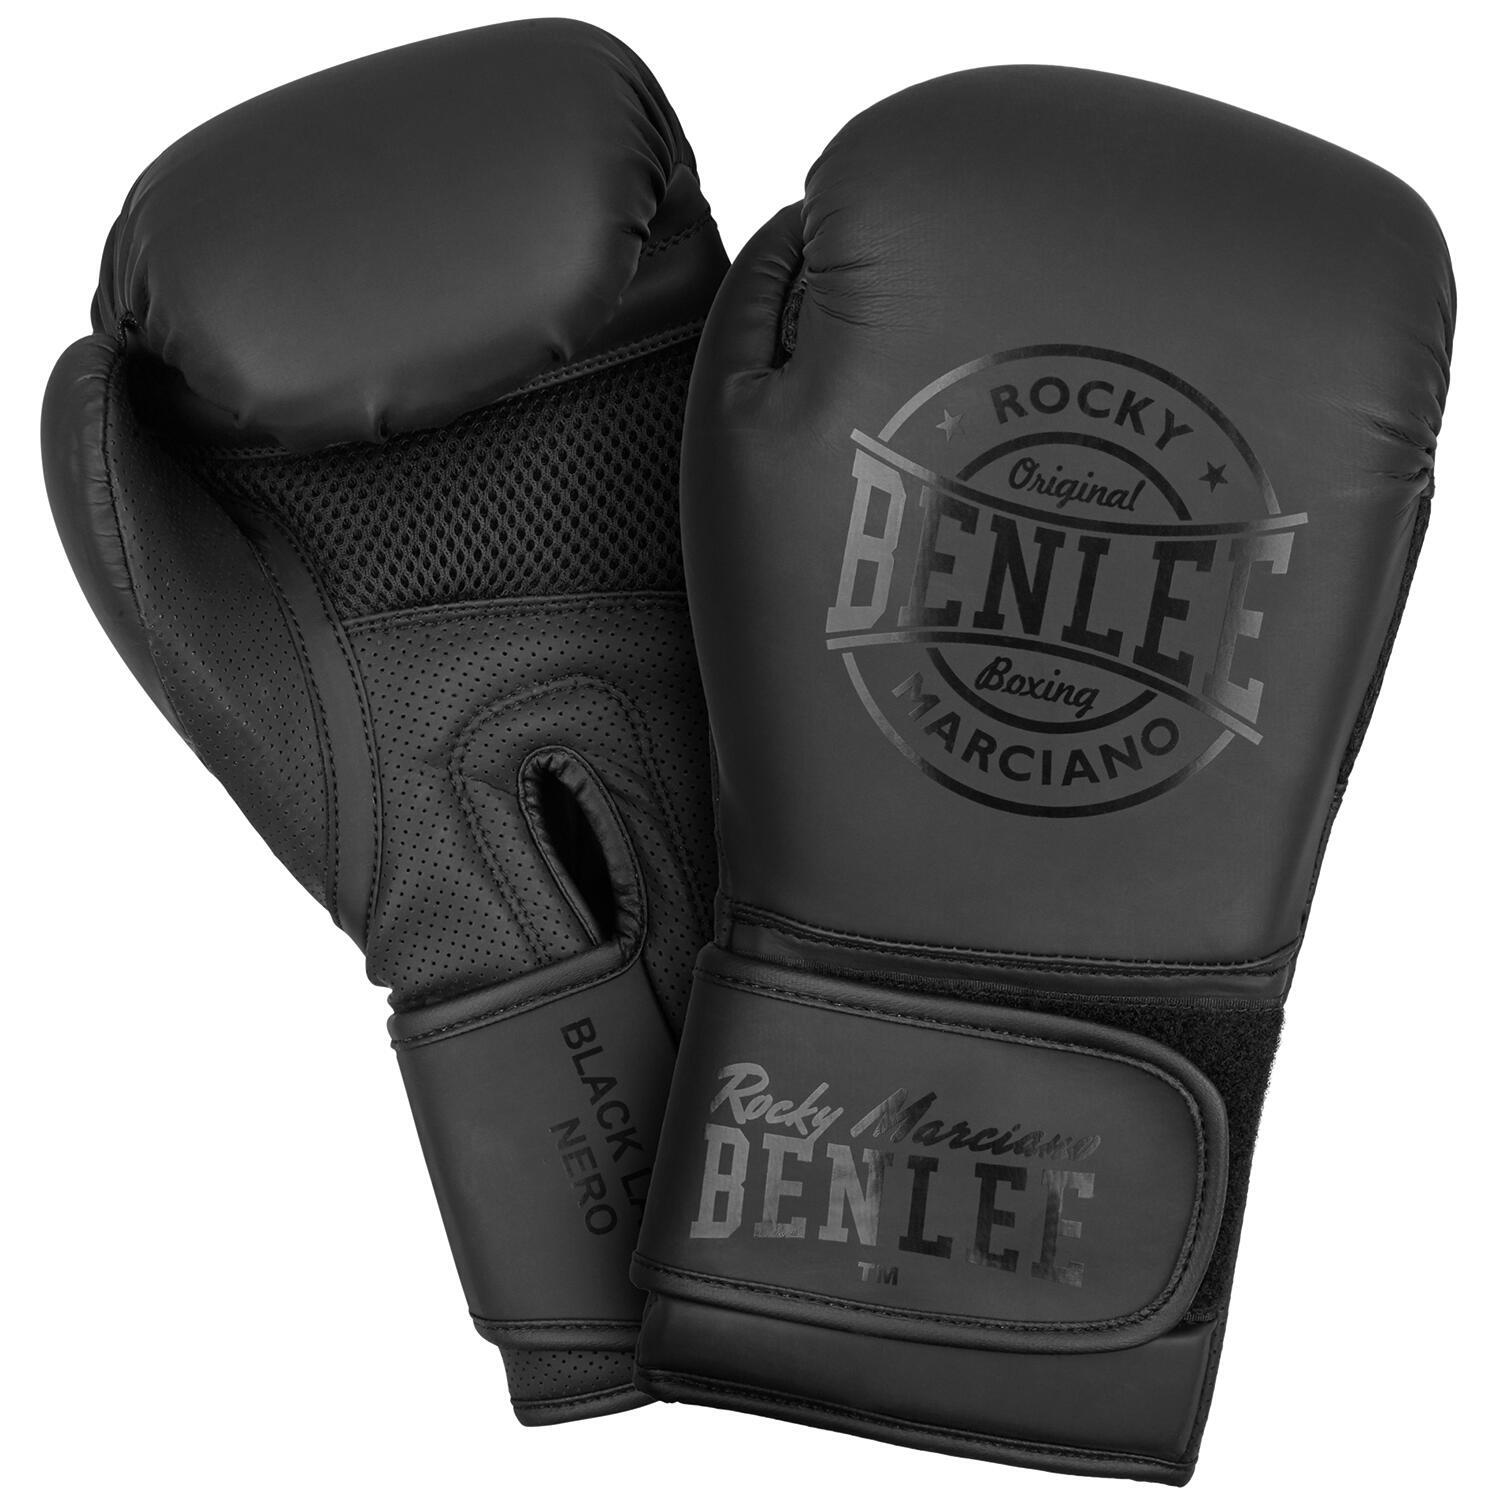 Боксерские перчатки BenLee Black Label Nero 12 унций, черный